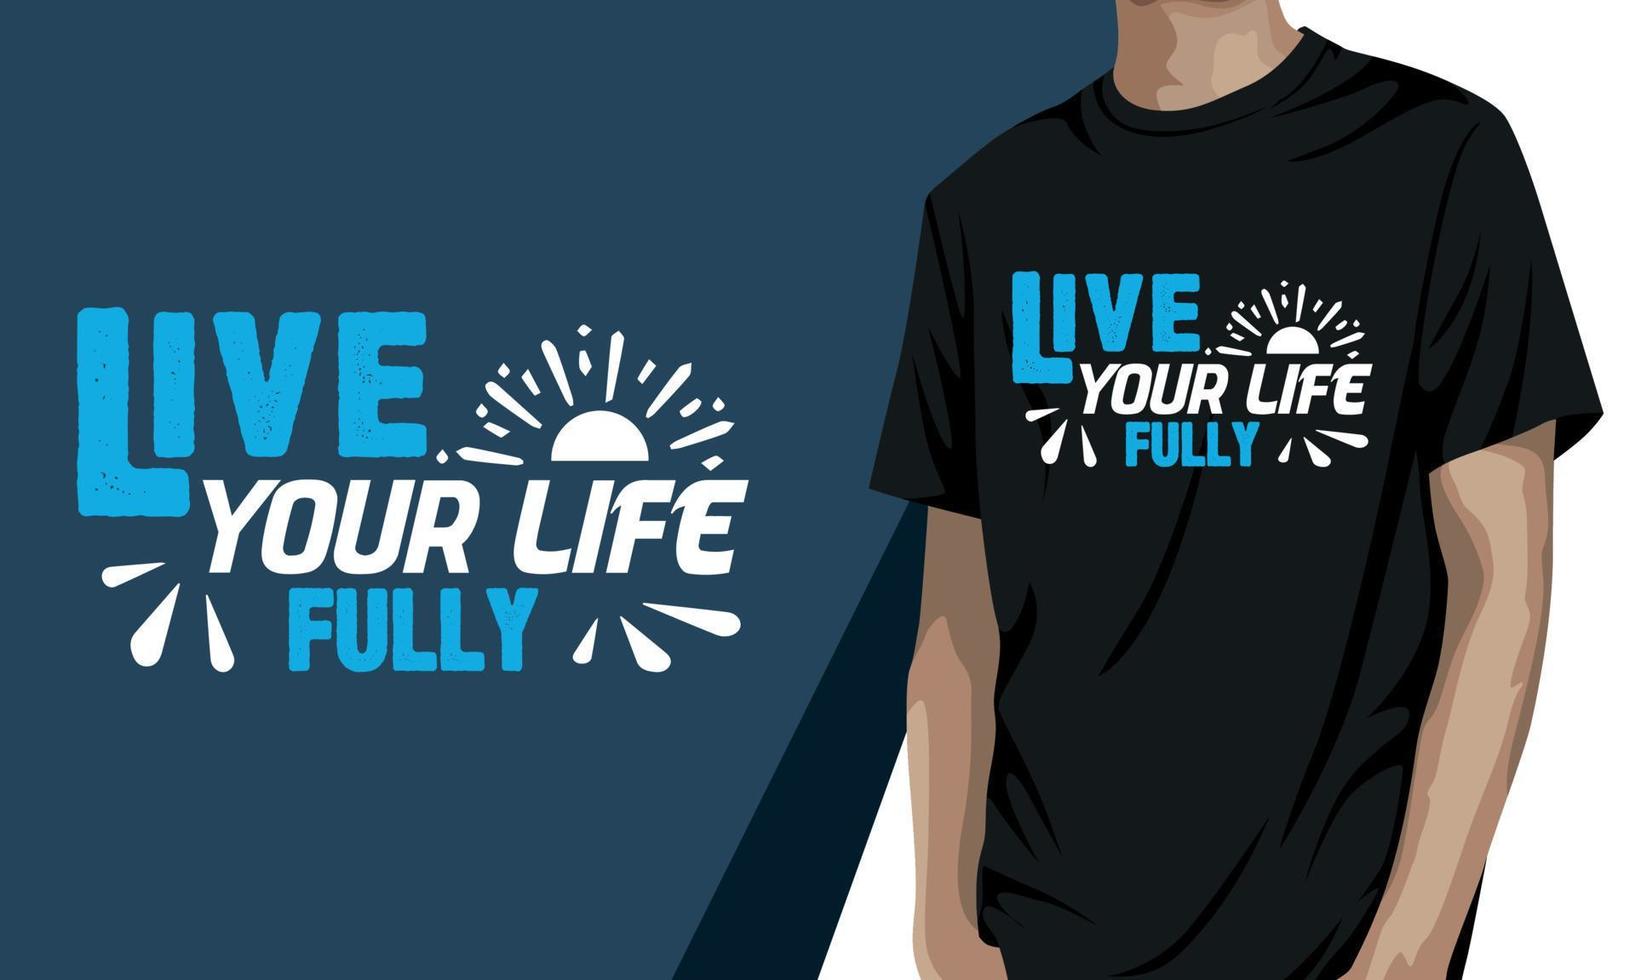 vivere il tuo vita completamente, motivazionale t camicia design vettore